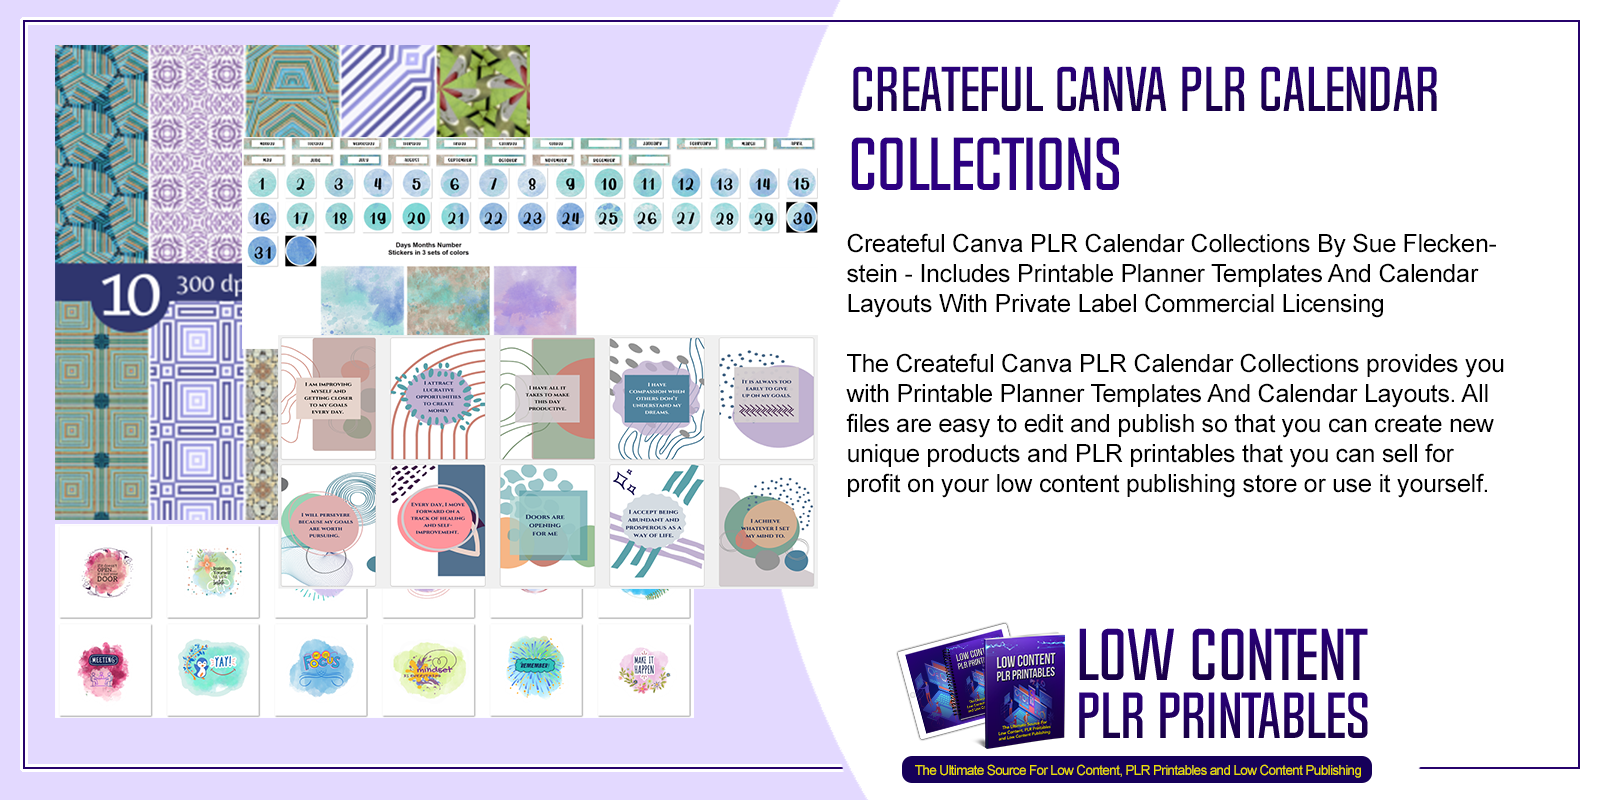 Createful Canva PLR Calendar Collections